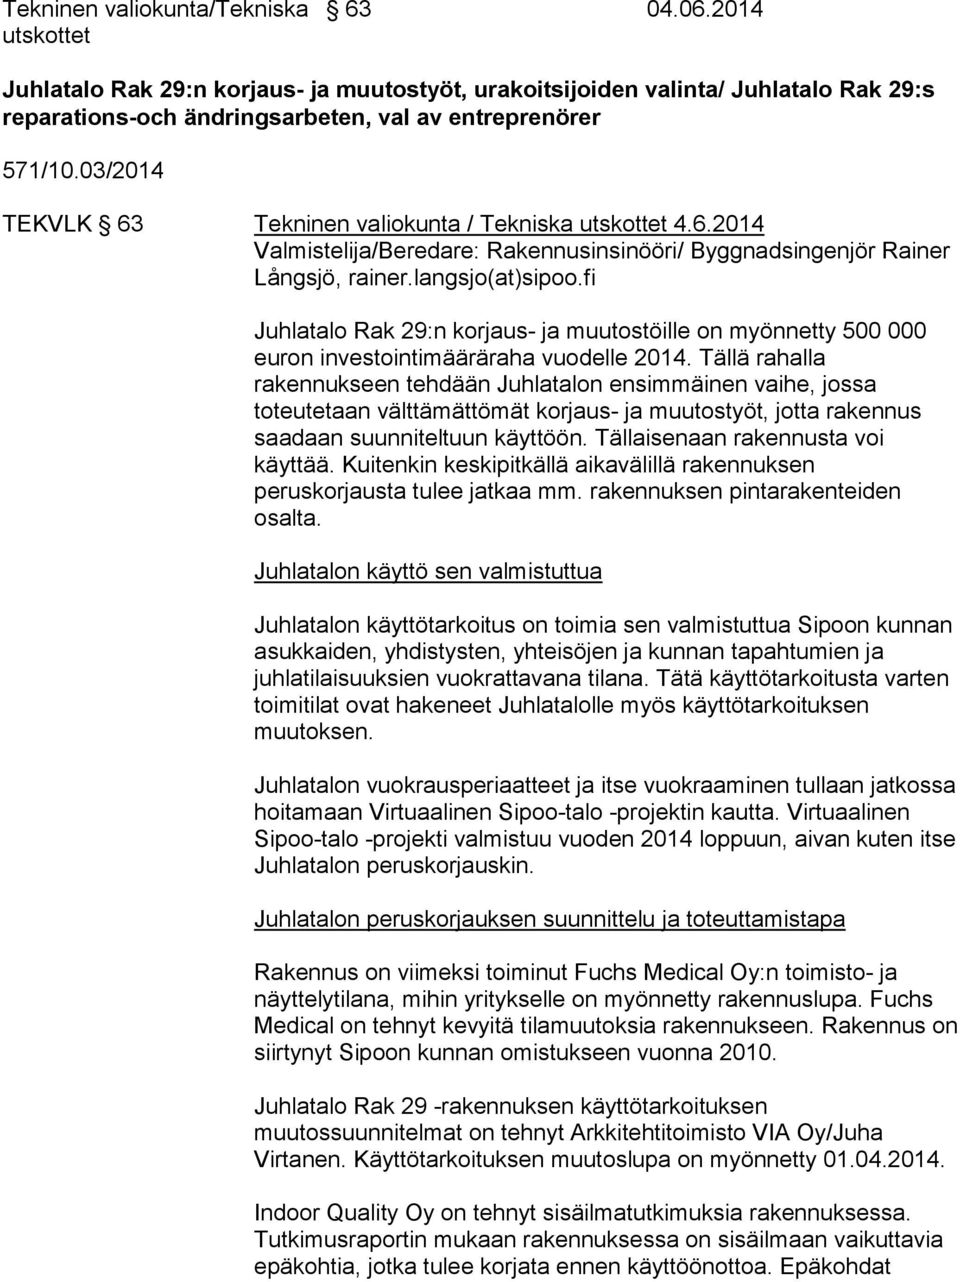 03/2014 TEKVLK 63 Tekninen valiokunta / Tekniska utskottet 4.6.2014 Valmistelija/Beredare: Rakennusinsinööri/ Byggnadsingenjör Rainer Långsjö, rainer.langsjo(at)sipoo.